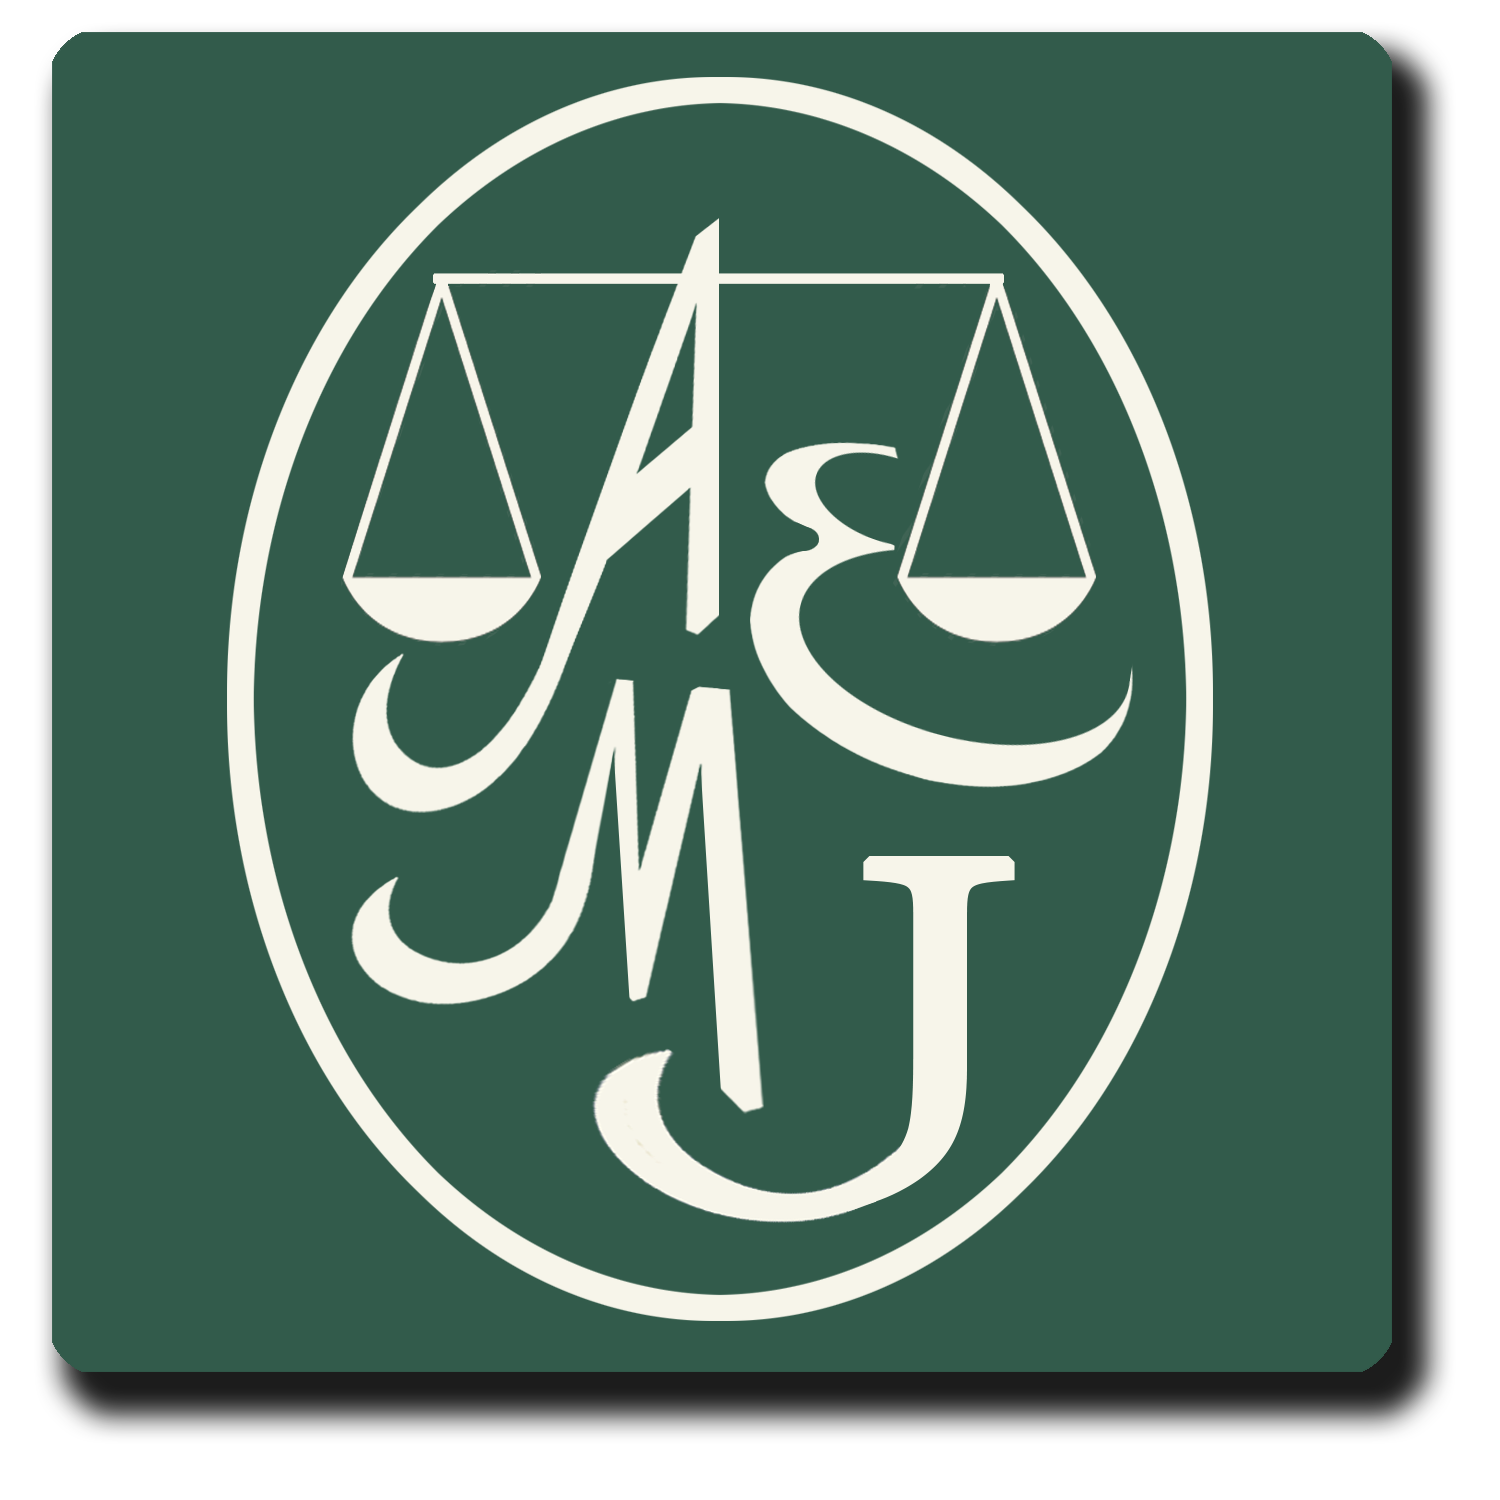 Asociación Española de Mujeres Juristas - formada por socias Licenciadas en Derecho que desarrollan su labor en el mundo jurídico.